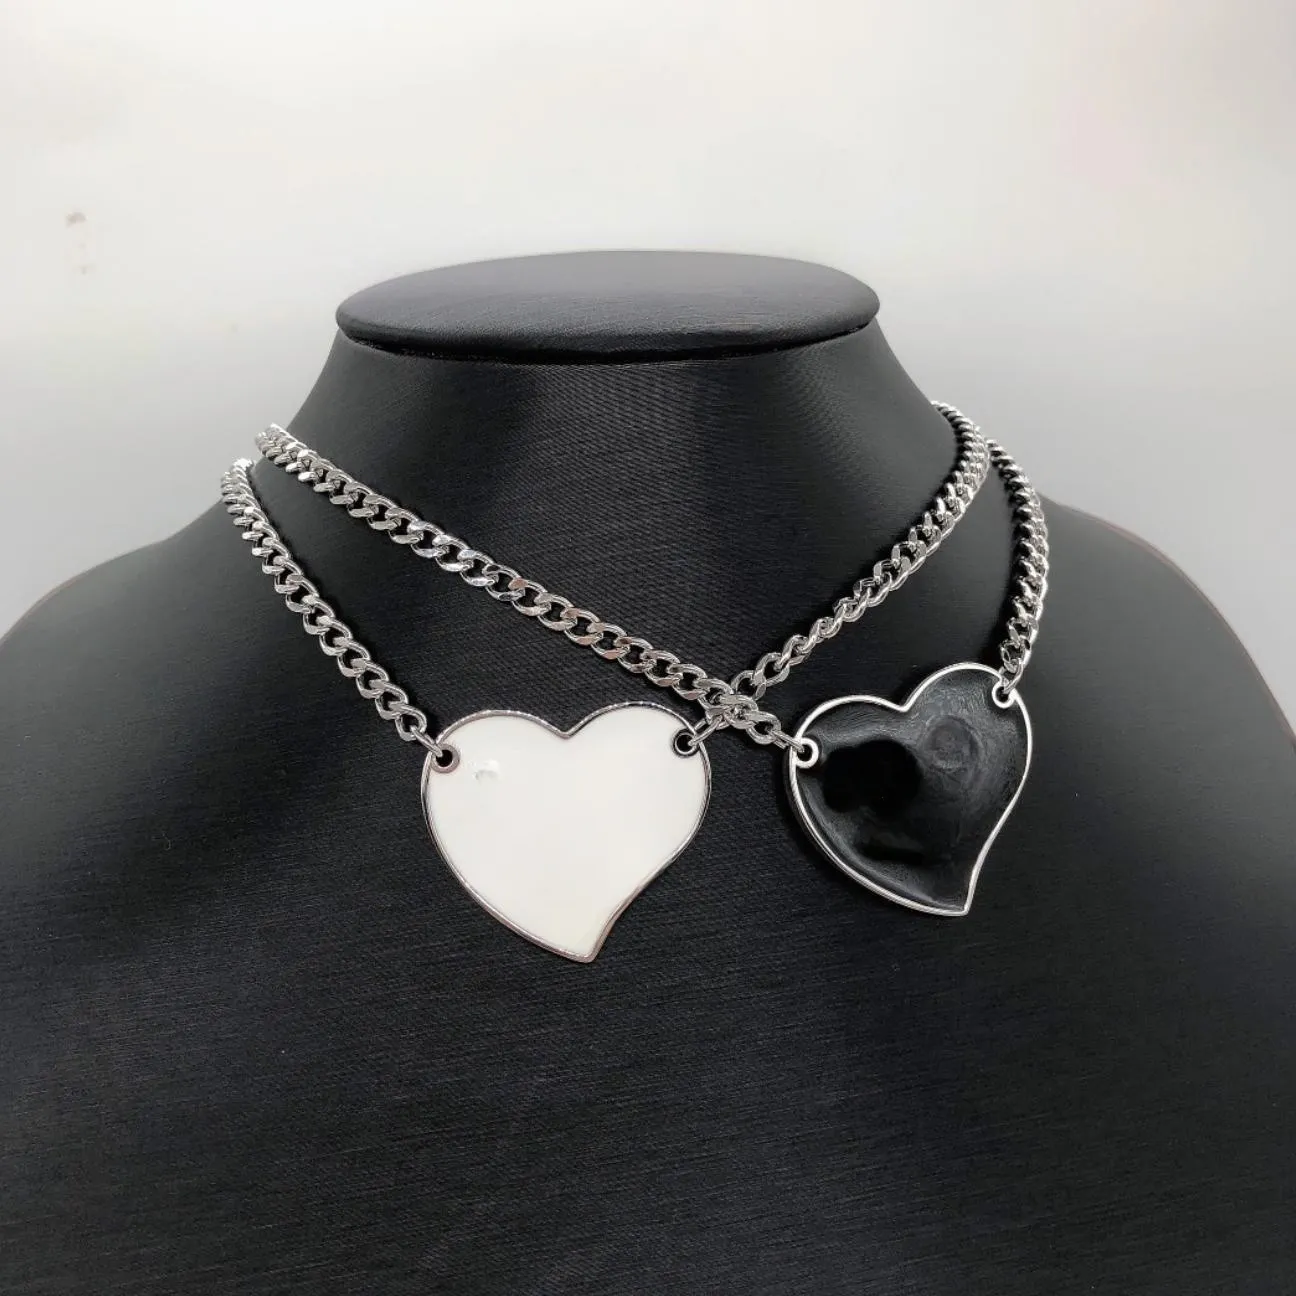 Haut de gamme populaire femme designer marque lettre pendentif collier chaîne grand bijoux fête Saint Valentin anniversaire coffret cadeau